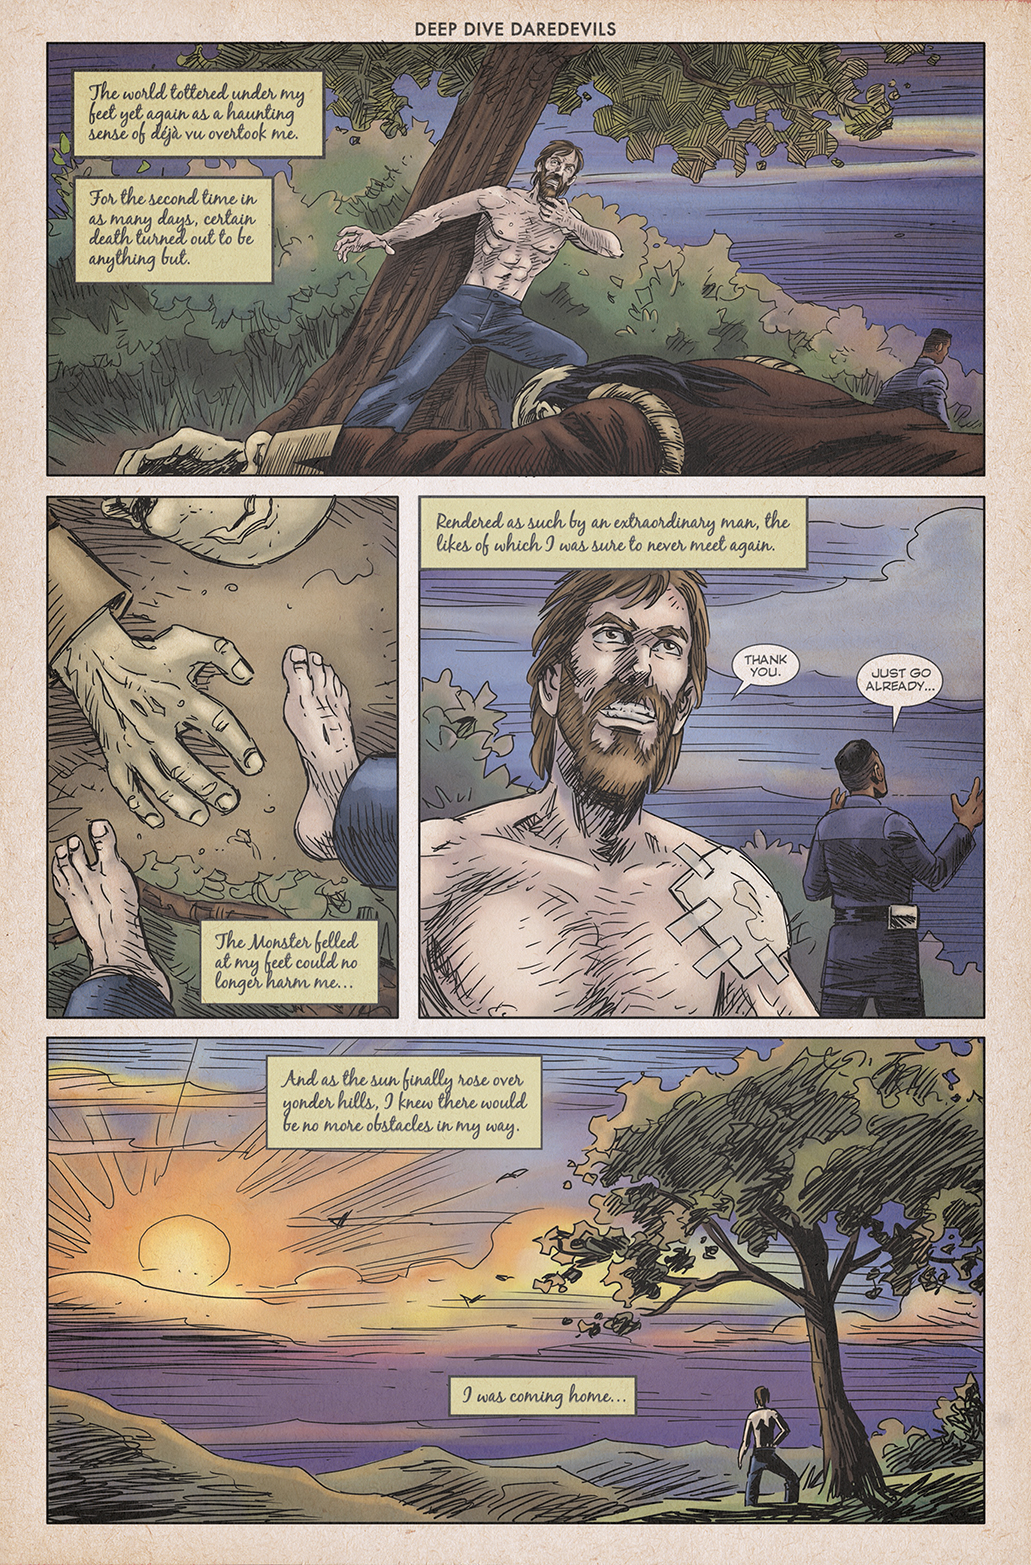 Beyond Familiar Shores – Page 16